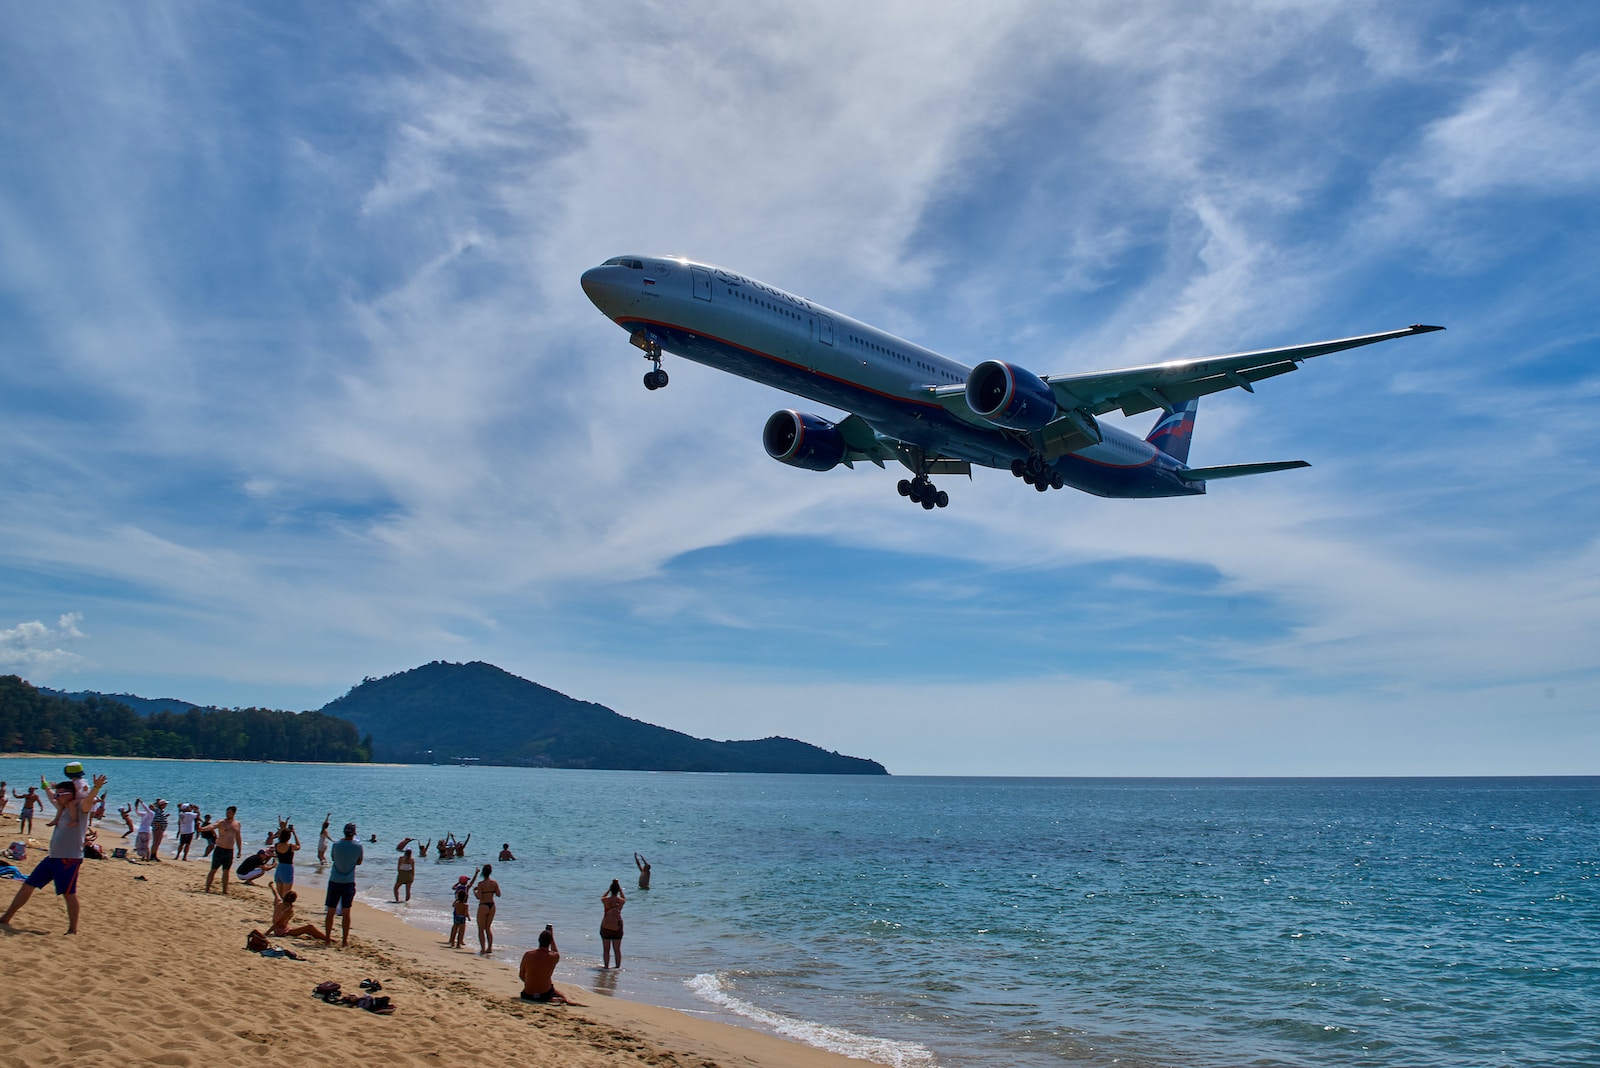 12. La spiaggia all'aeroporto La spiaggia di fronte all'aeroporto di Phuket è un vero spettacolo - sicuramente per gli osservatori di aerei e per chiunque sia affascinato dagli aerei.